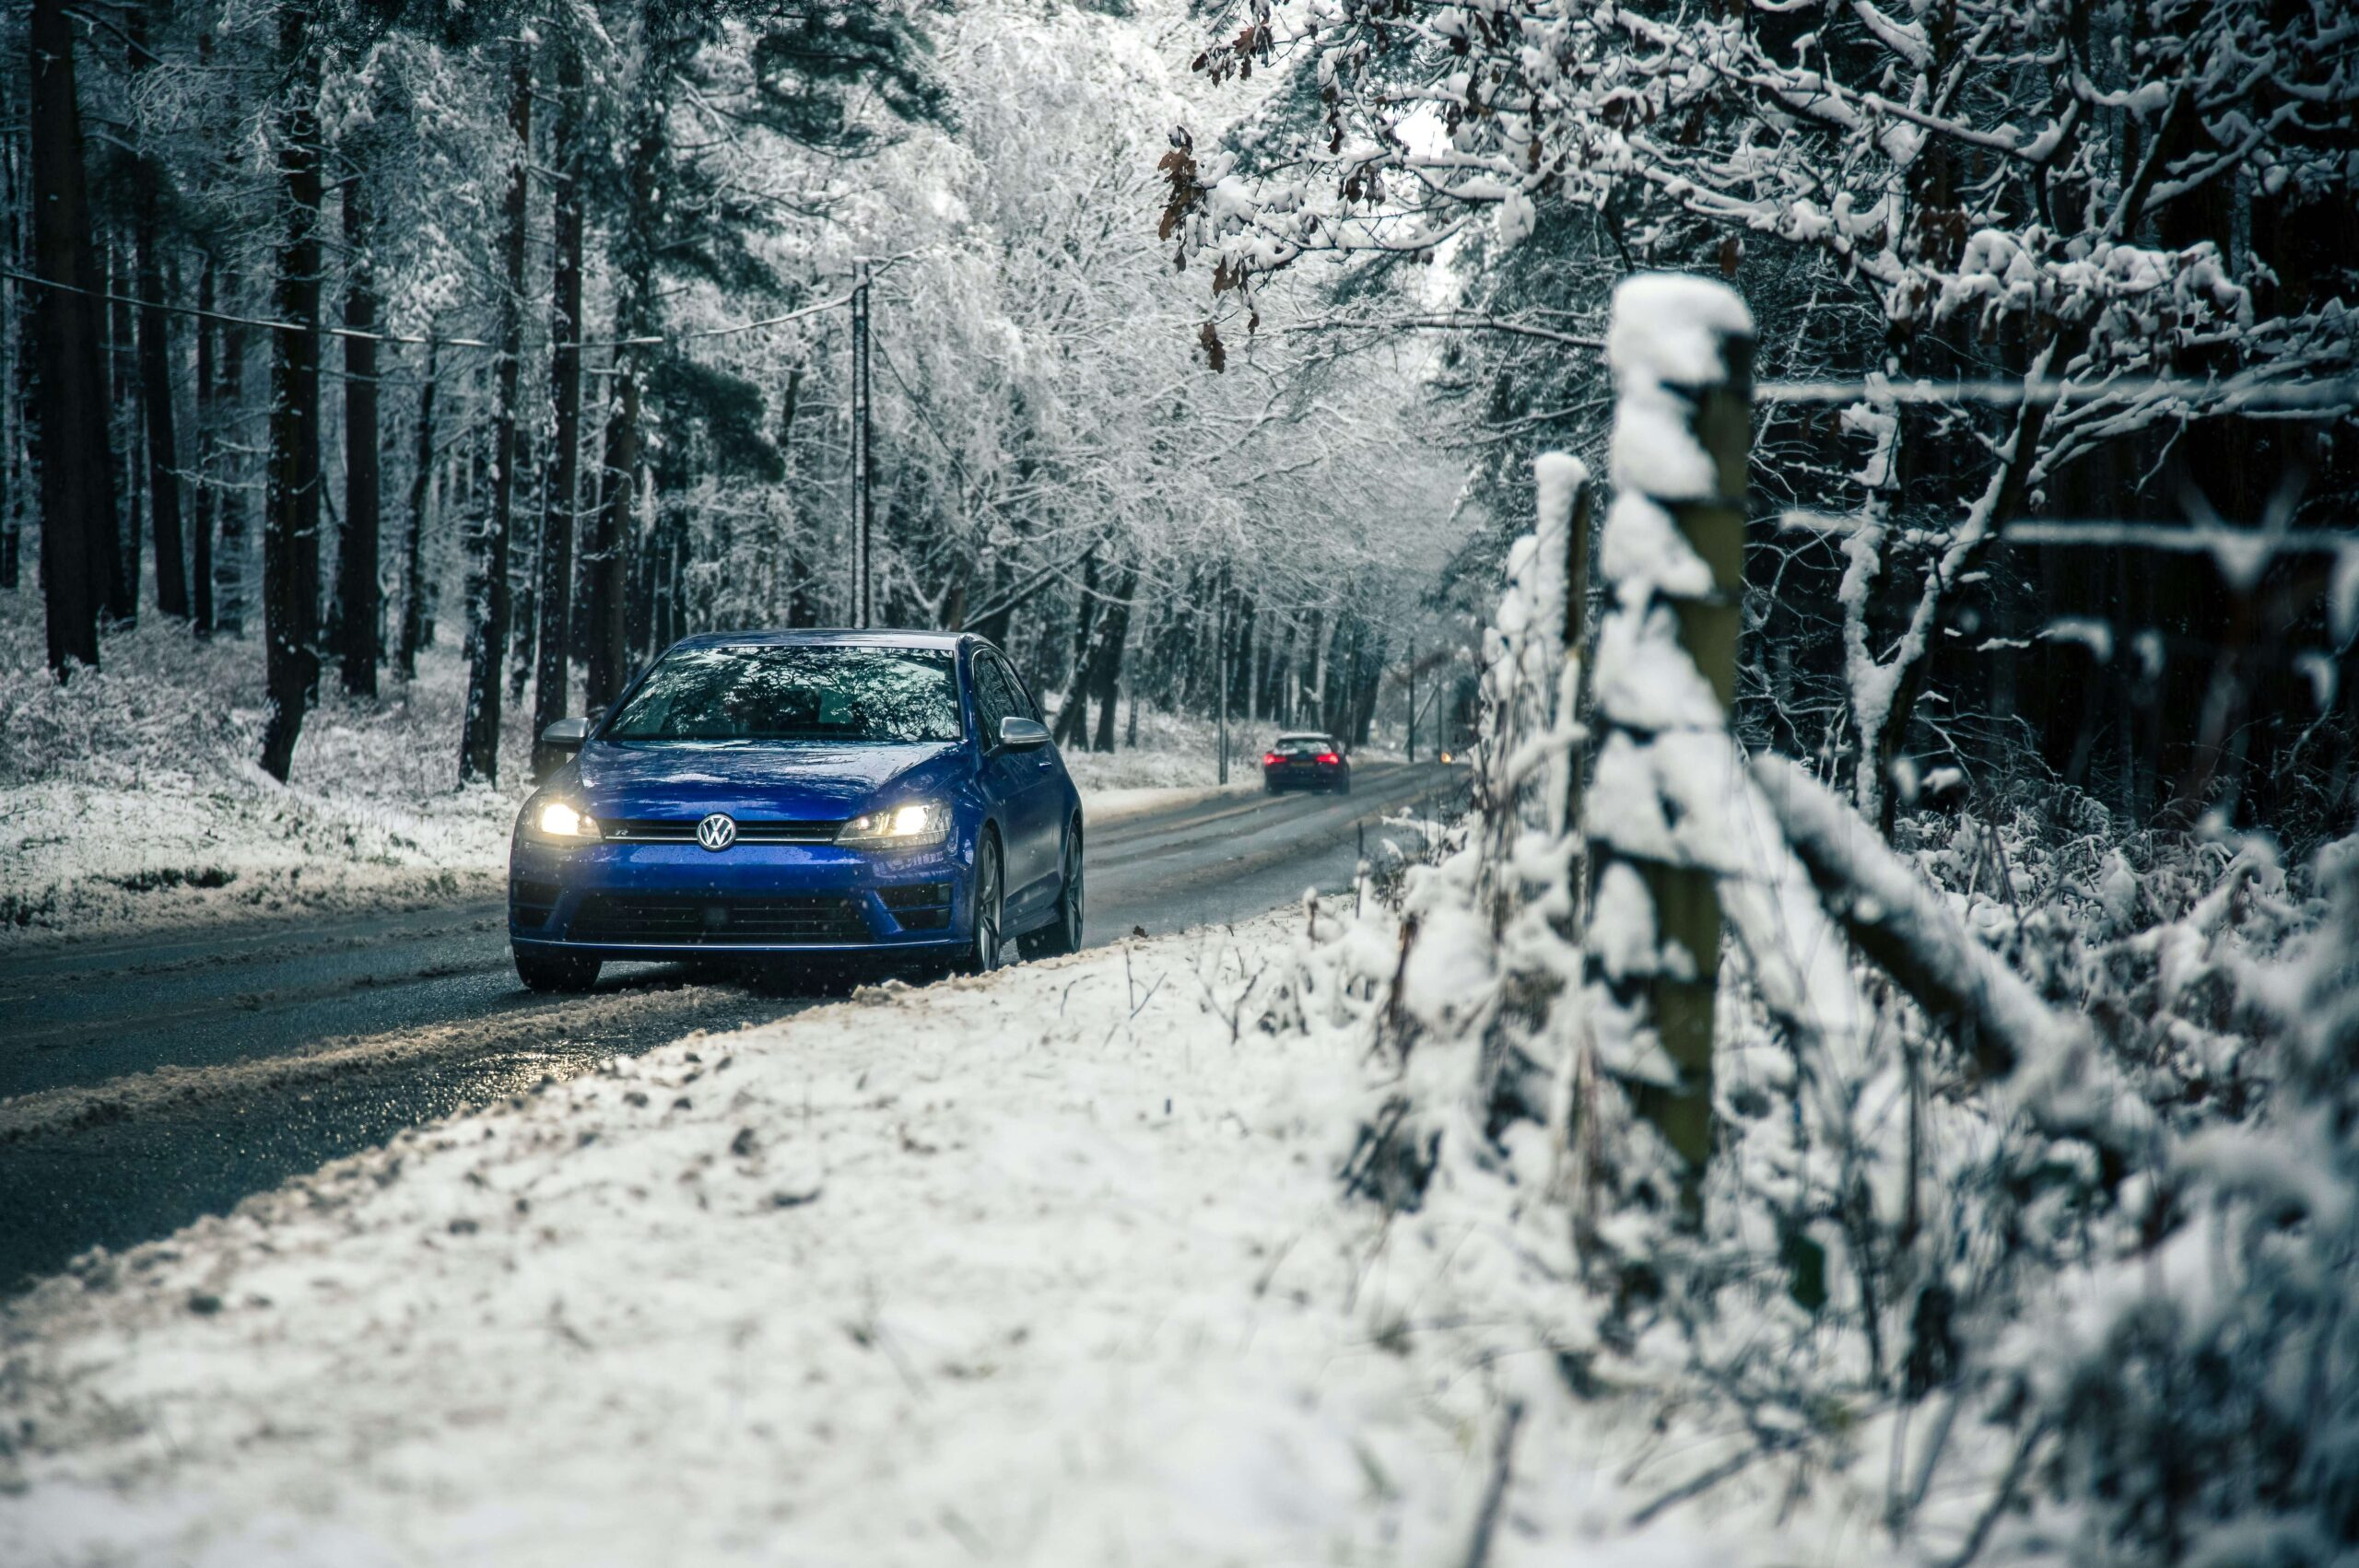 Vinterväglag i skog, två bilar i bild.